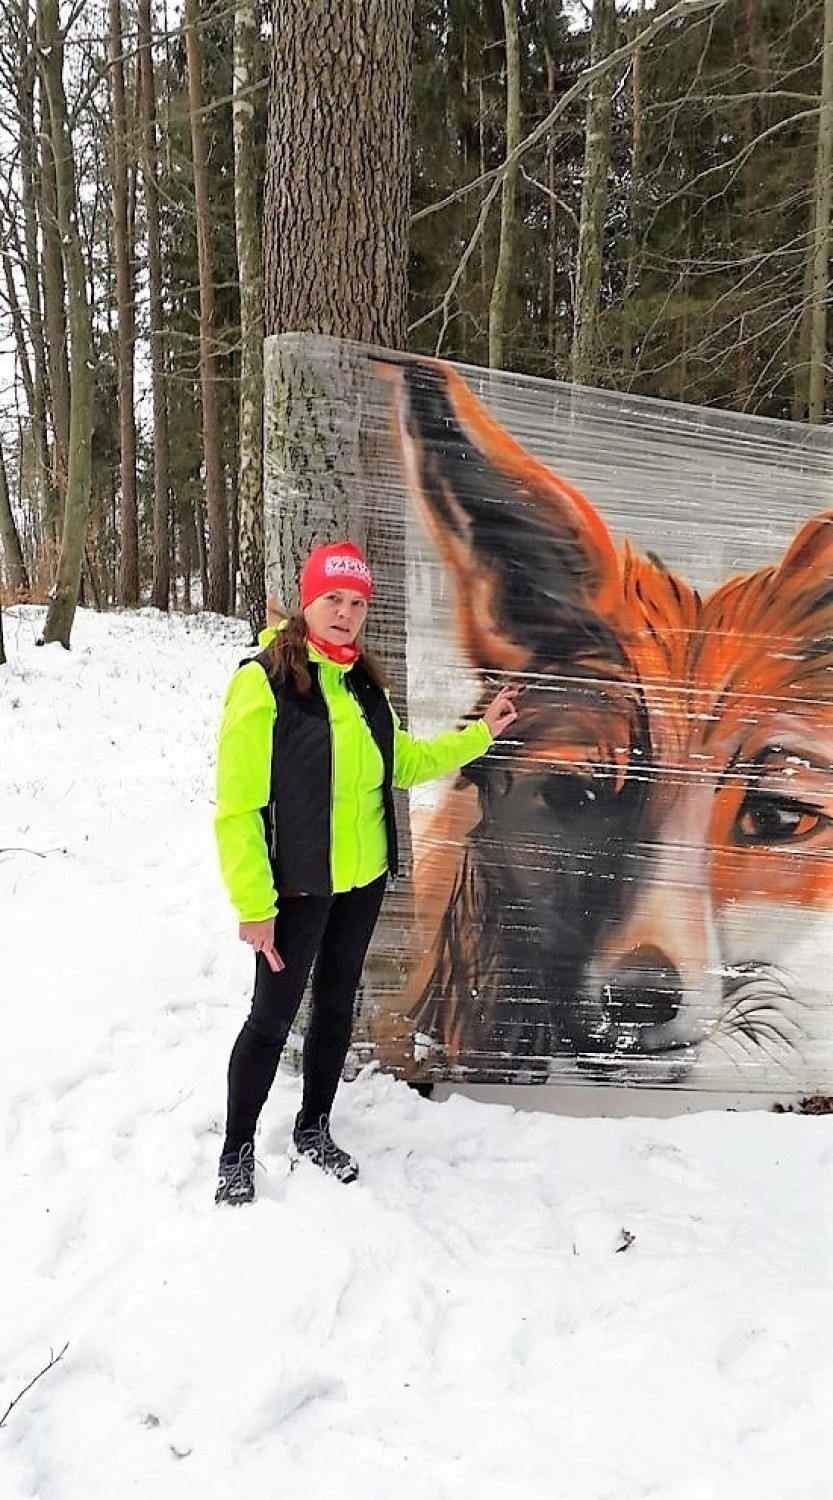 Tajemniczy artysta ze Sławna maluje w lesie ogromne portrety zwierząt. Zdjęcia